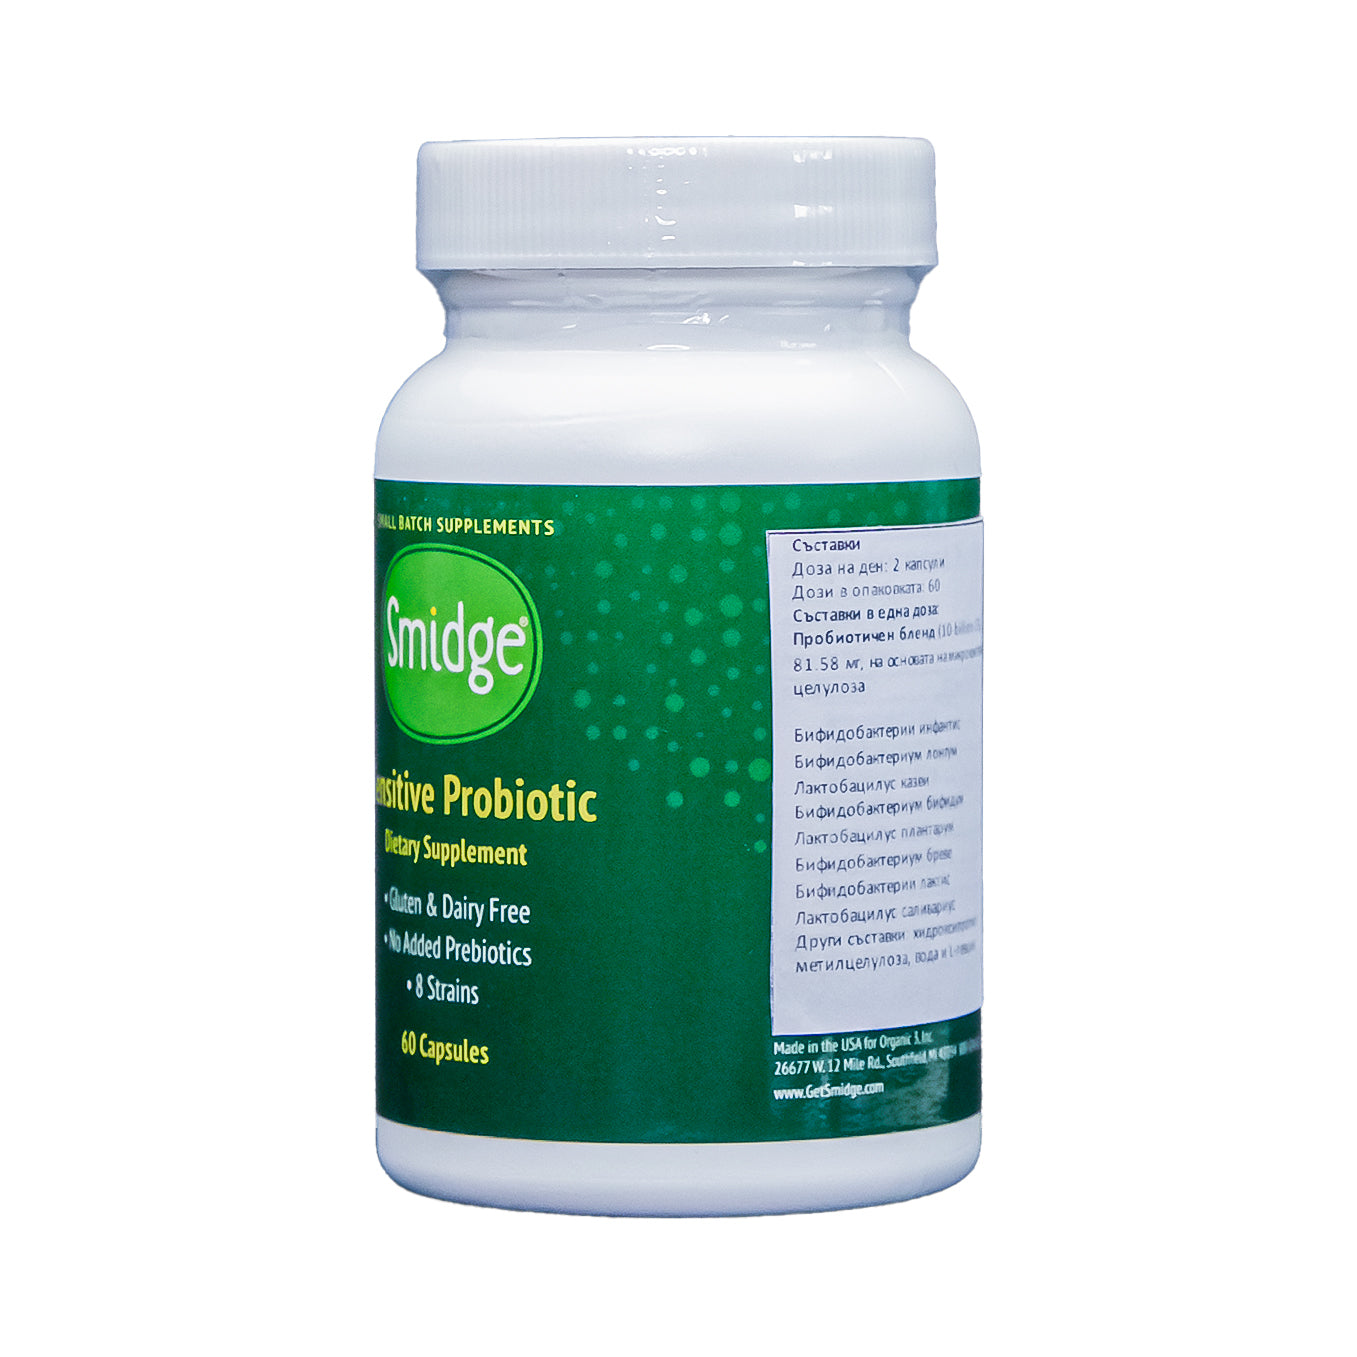 Smidge® Sensitive пробиотик - 60 капсули